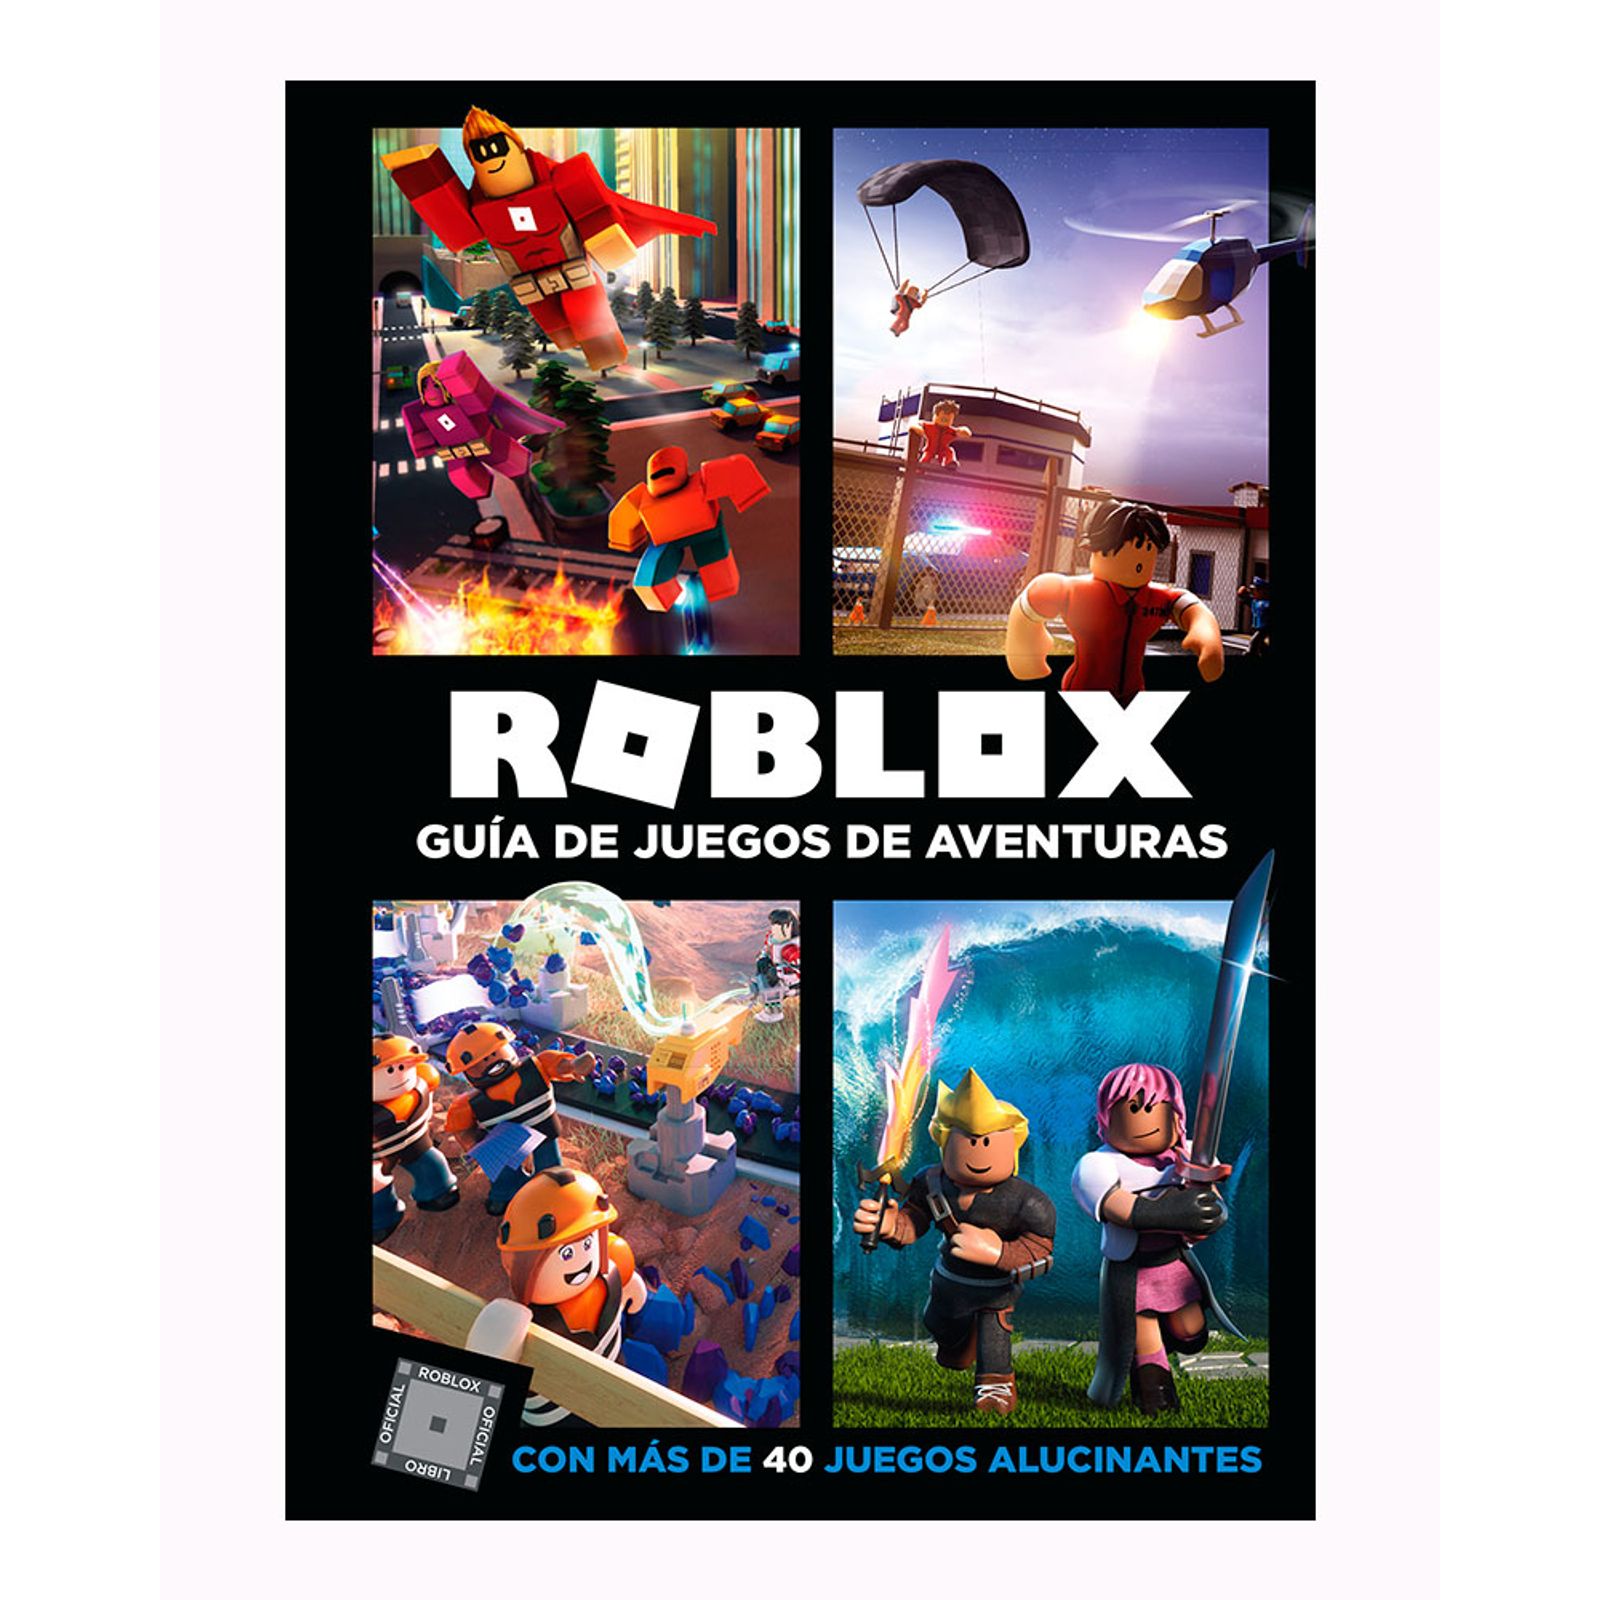 Roblox Guía De Juegos De Aventuras Panamericana New - cali colombia roblox